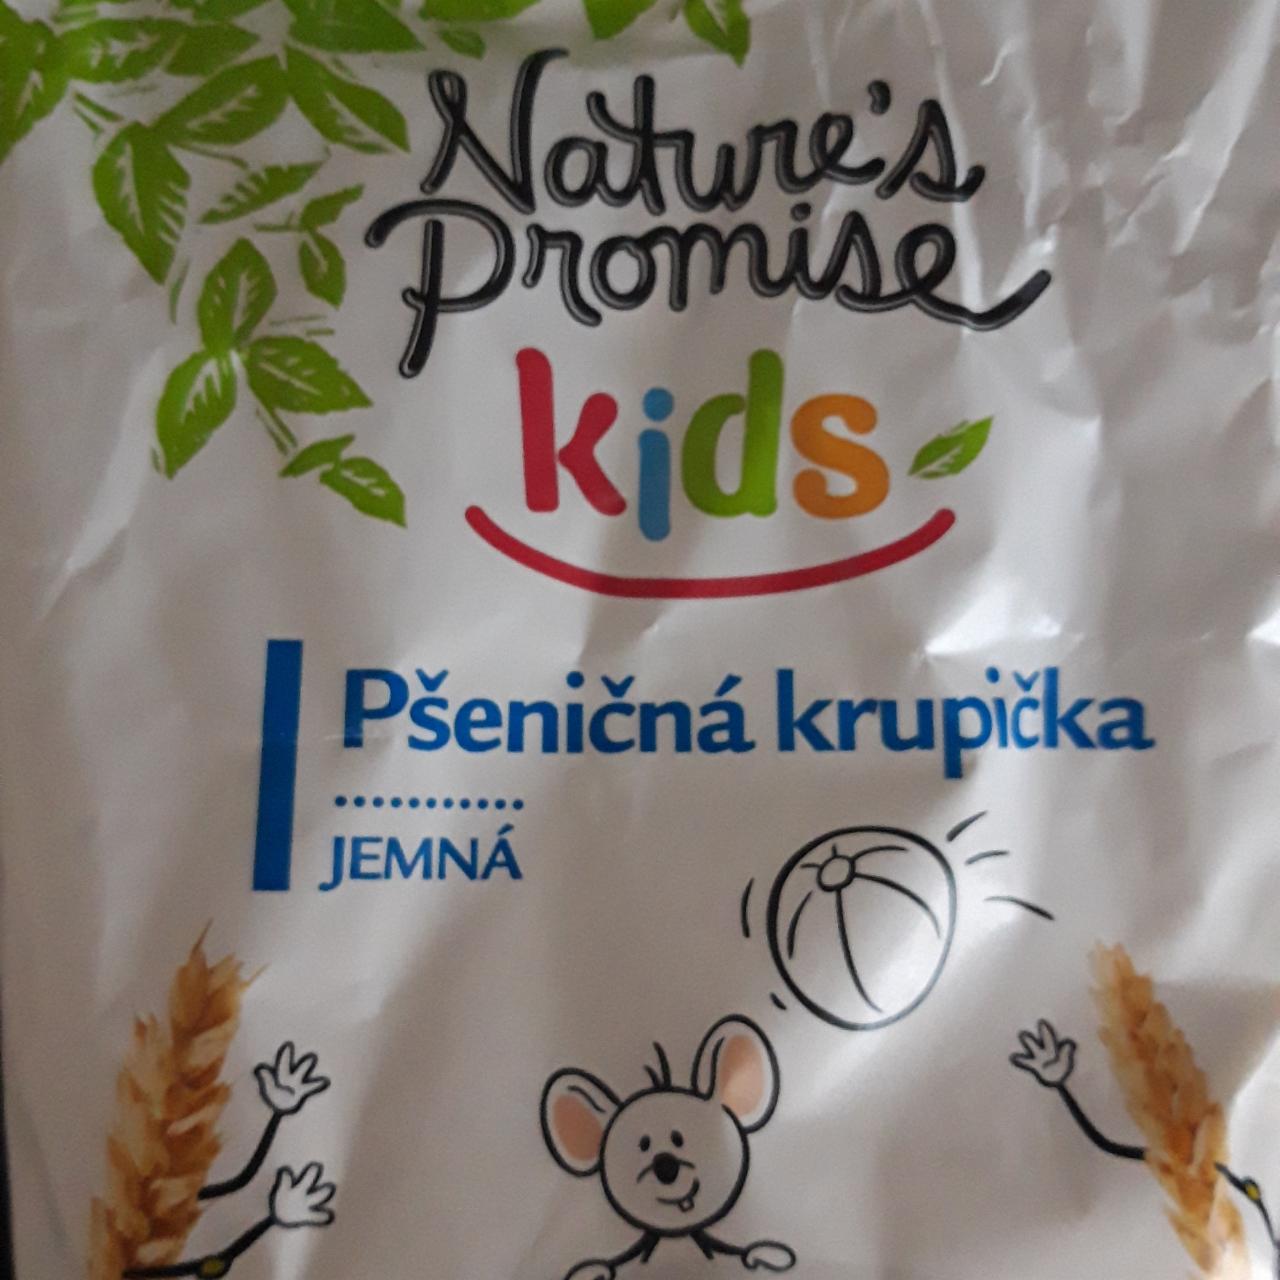 Fotografie - Pšeničná krupička jemná kids Nature's Promise